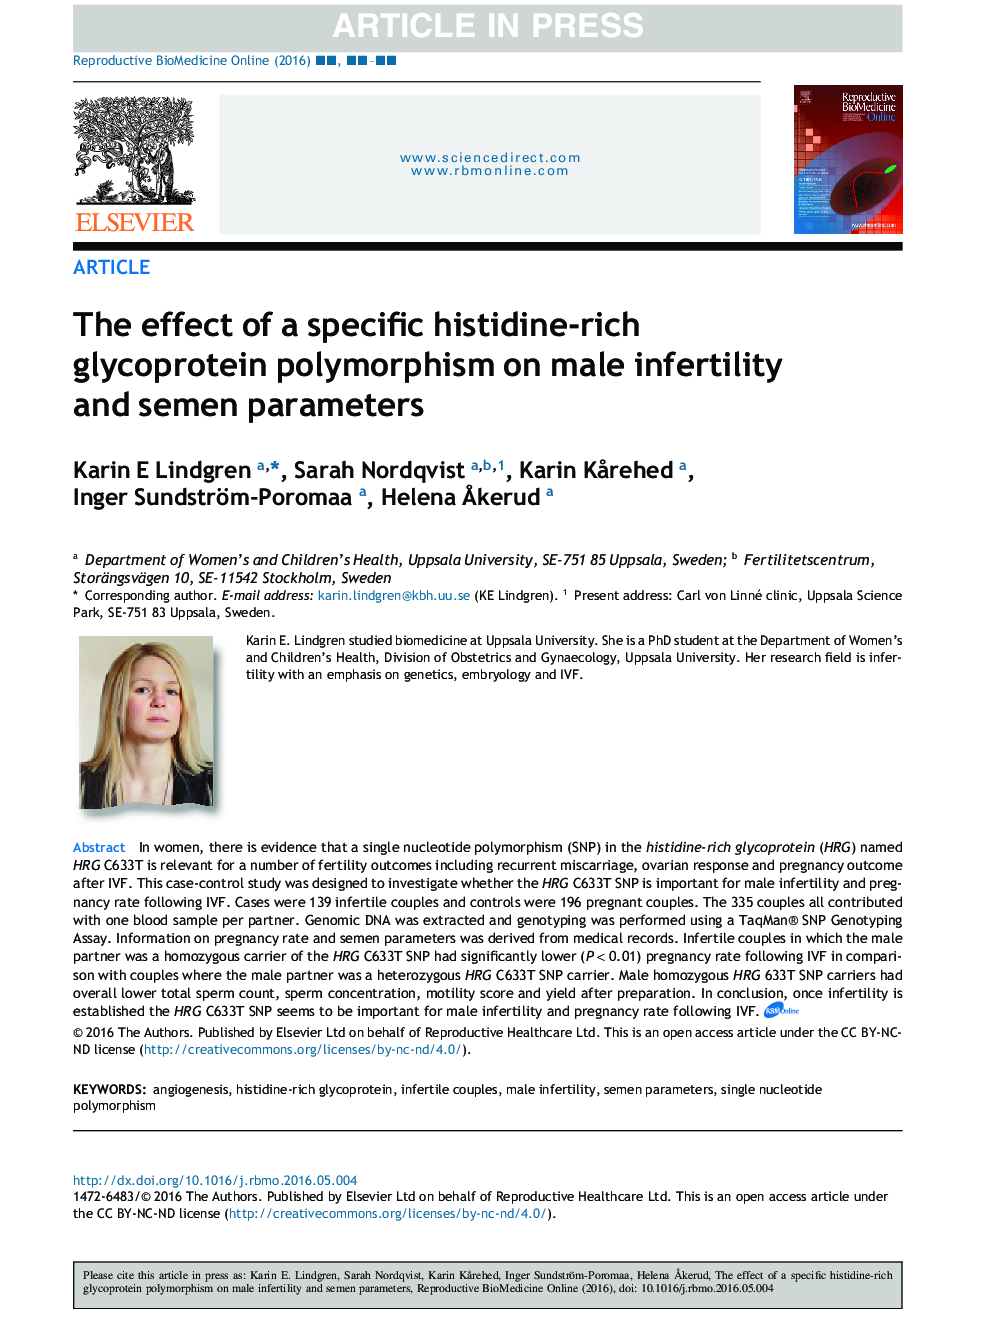 اثر پلی مورفیسم گلیکوپروتئین غنی از هیستیدین خاص بر ناباروری و پارامترهای اسپرم 